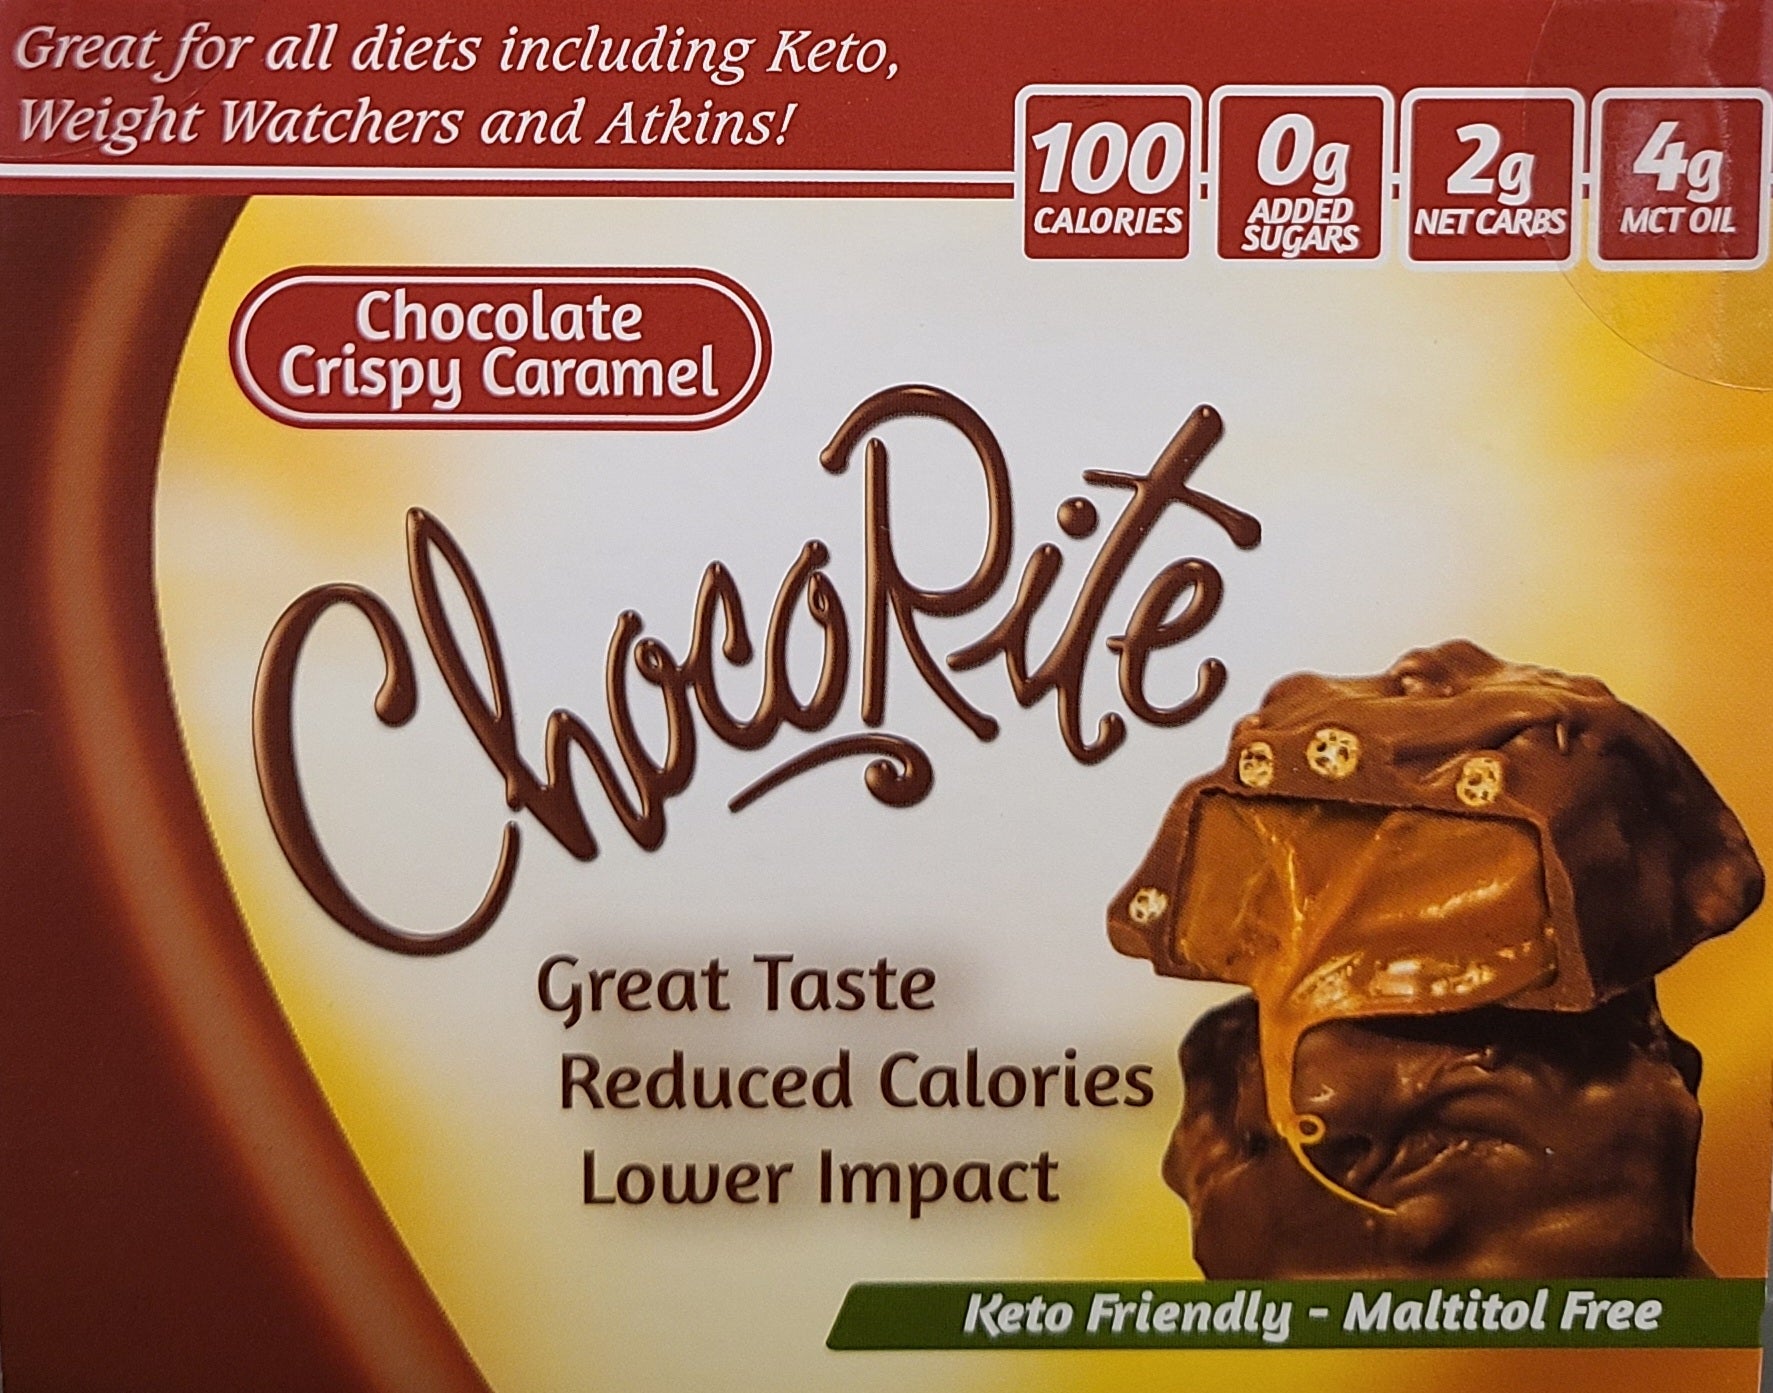 ChocoRite Chocolate Bars